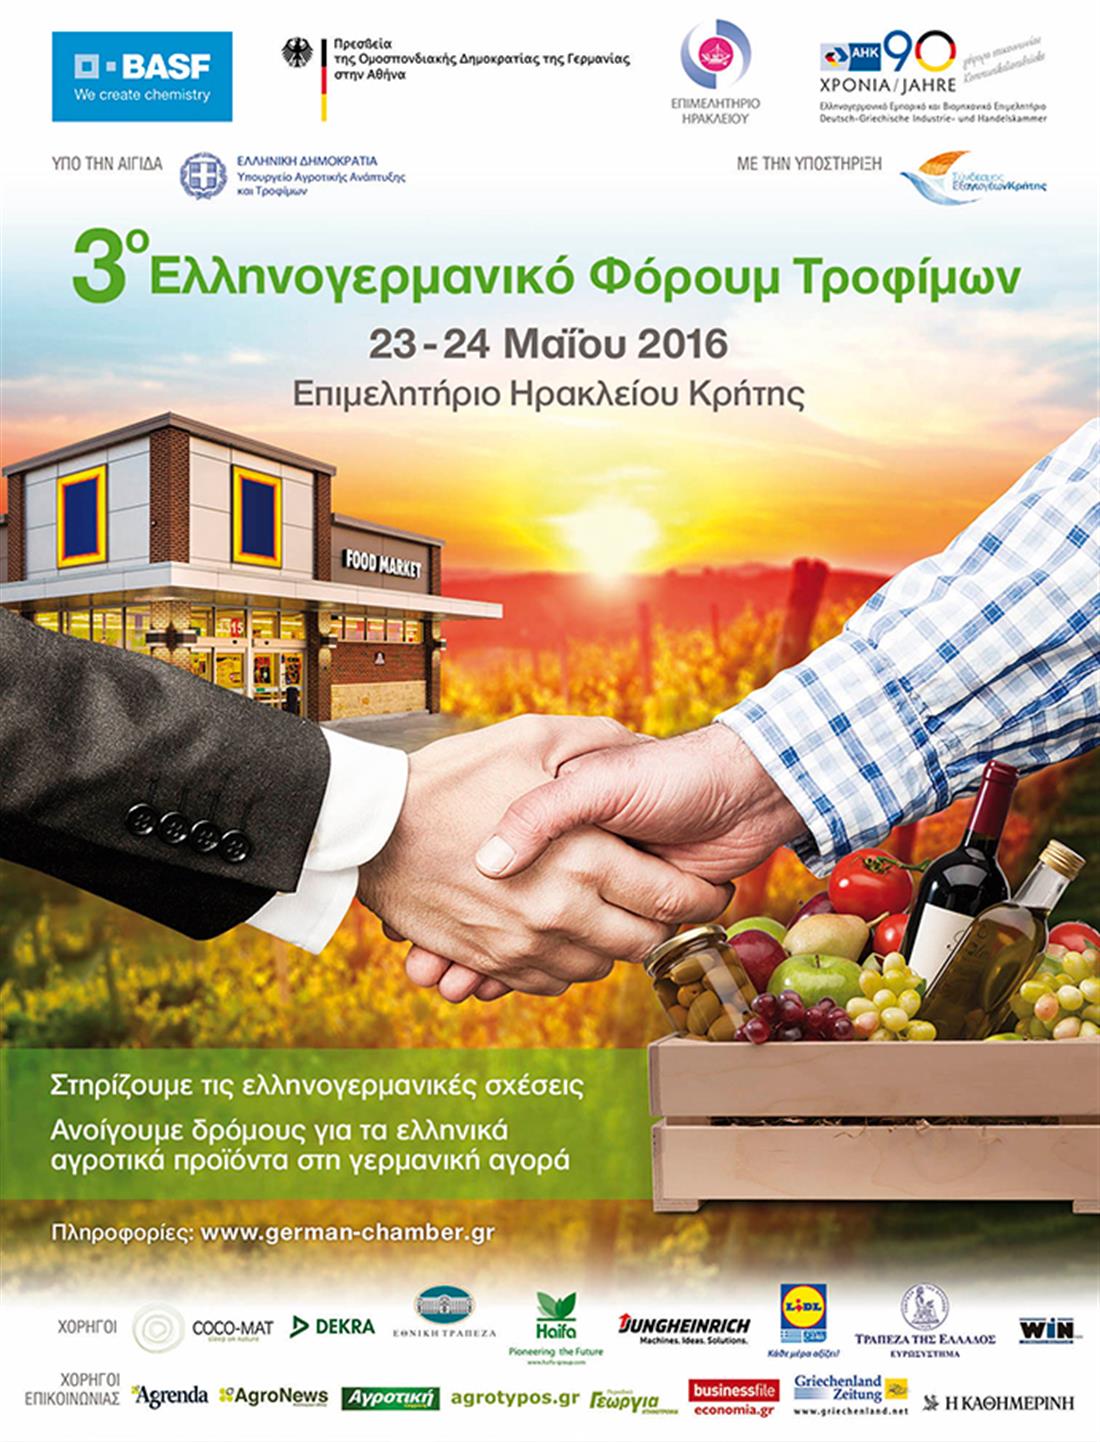 Ελληνογερμανικό Επιμελητήριο - Β2Β συμφωνίες - εξαγωγές - 3ο Ελληνογερμανικό Φόρουμ Τροφίμων